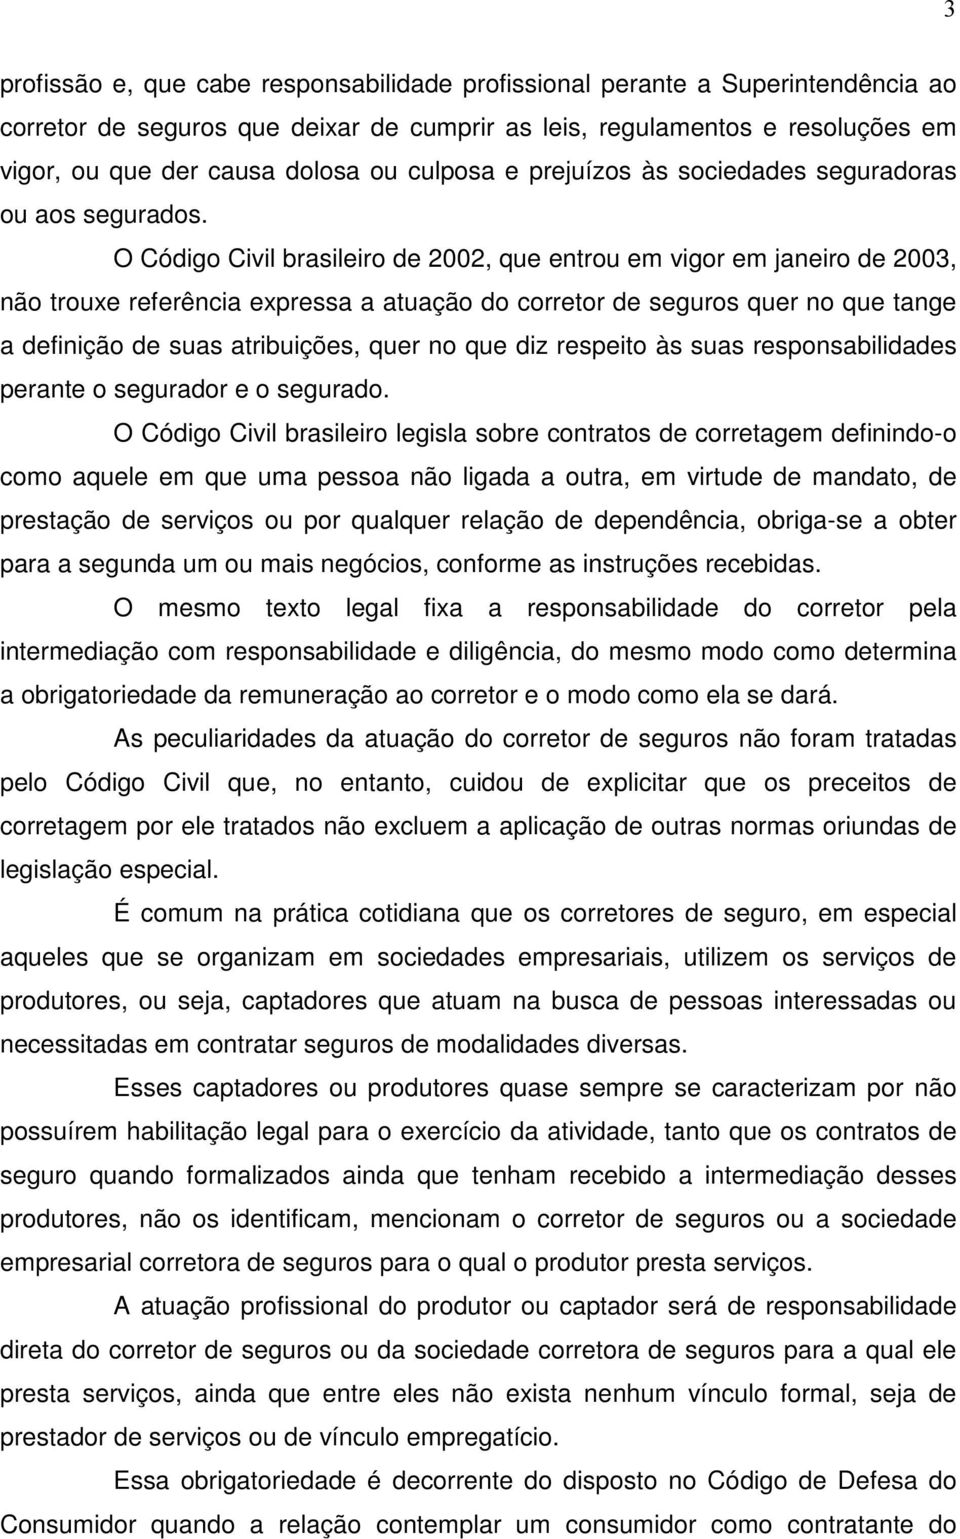 O Código Civil brasileiro de 2002, que entrou em vigor em janeiro de 2003, não trouxe referência expressa a atuação do corretor de seguros quer no que tange a definição de suas atribuições, quer no